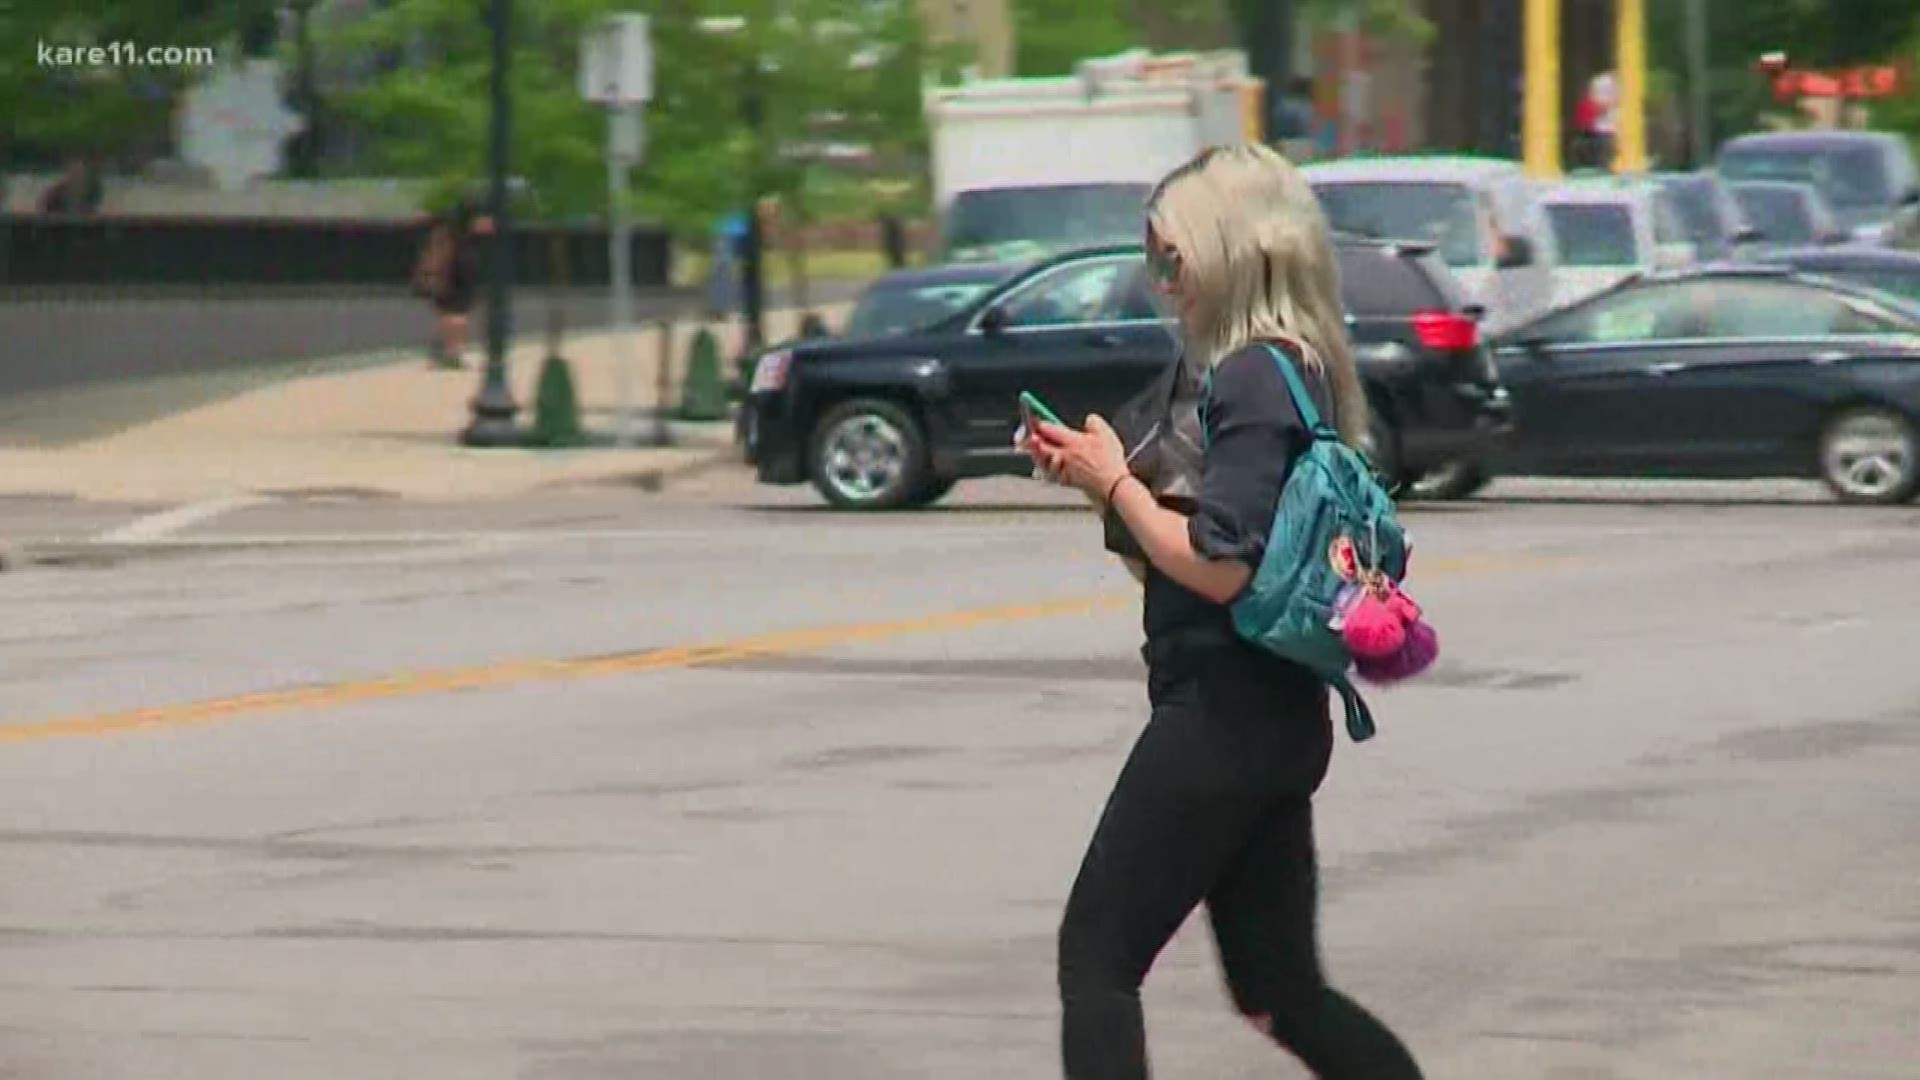 Cellphones seen as big factor in pedestrian deaths